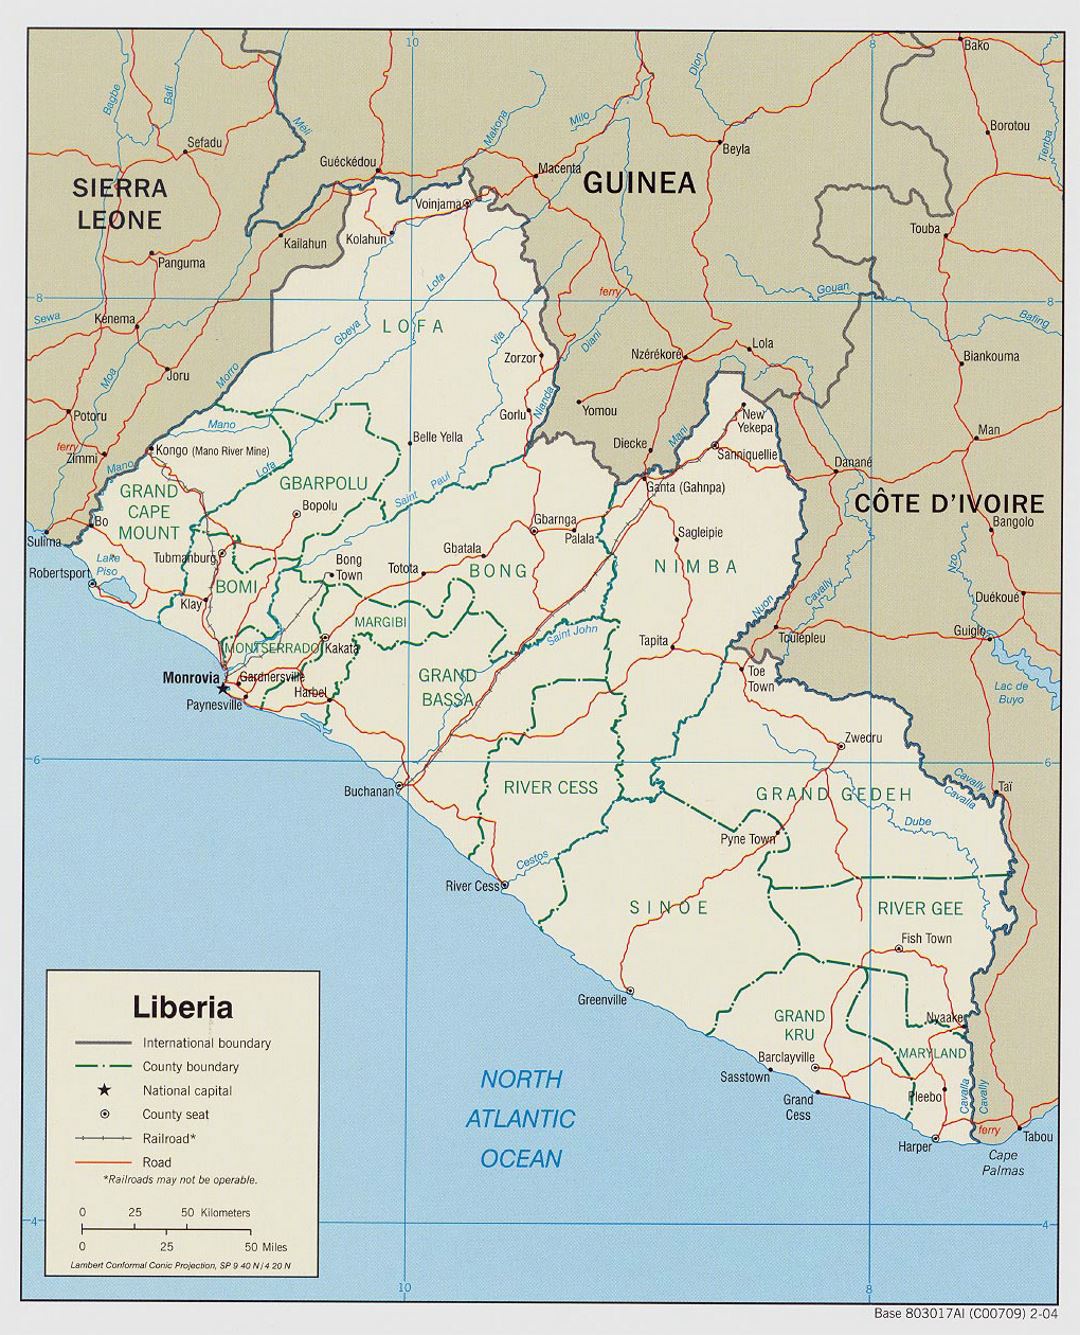 Детальная политическая и административная карта Либерии с дорогами, железными дорогами и крупными городами - 2004